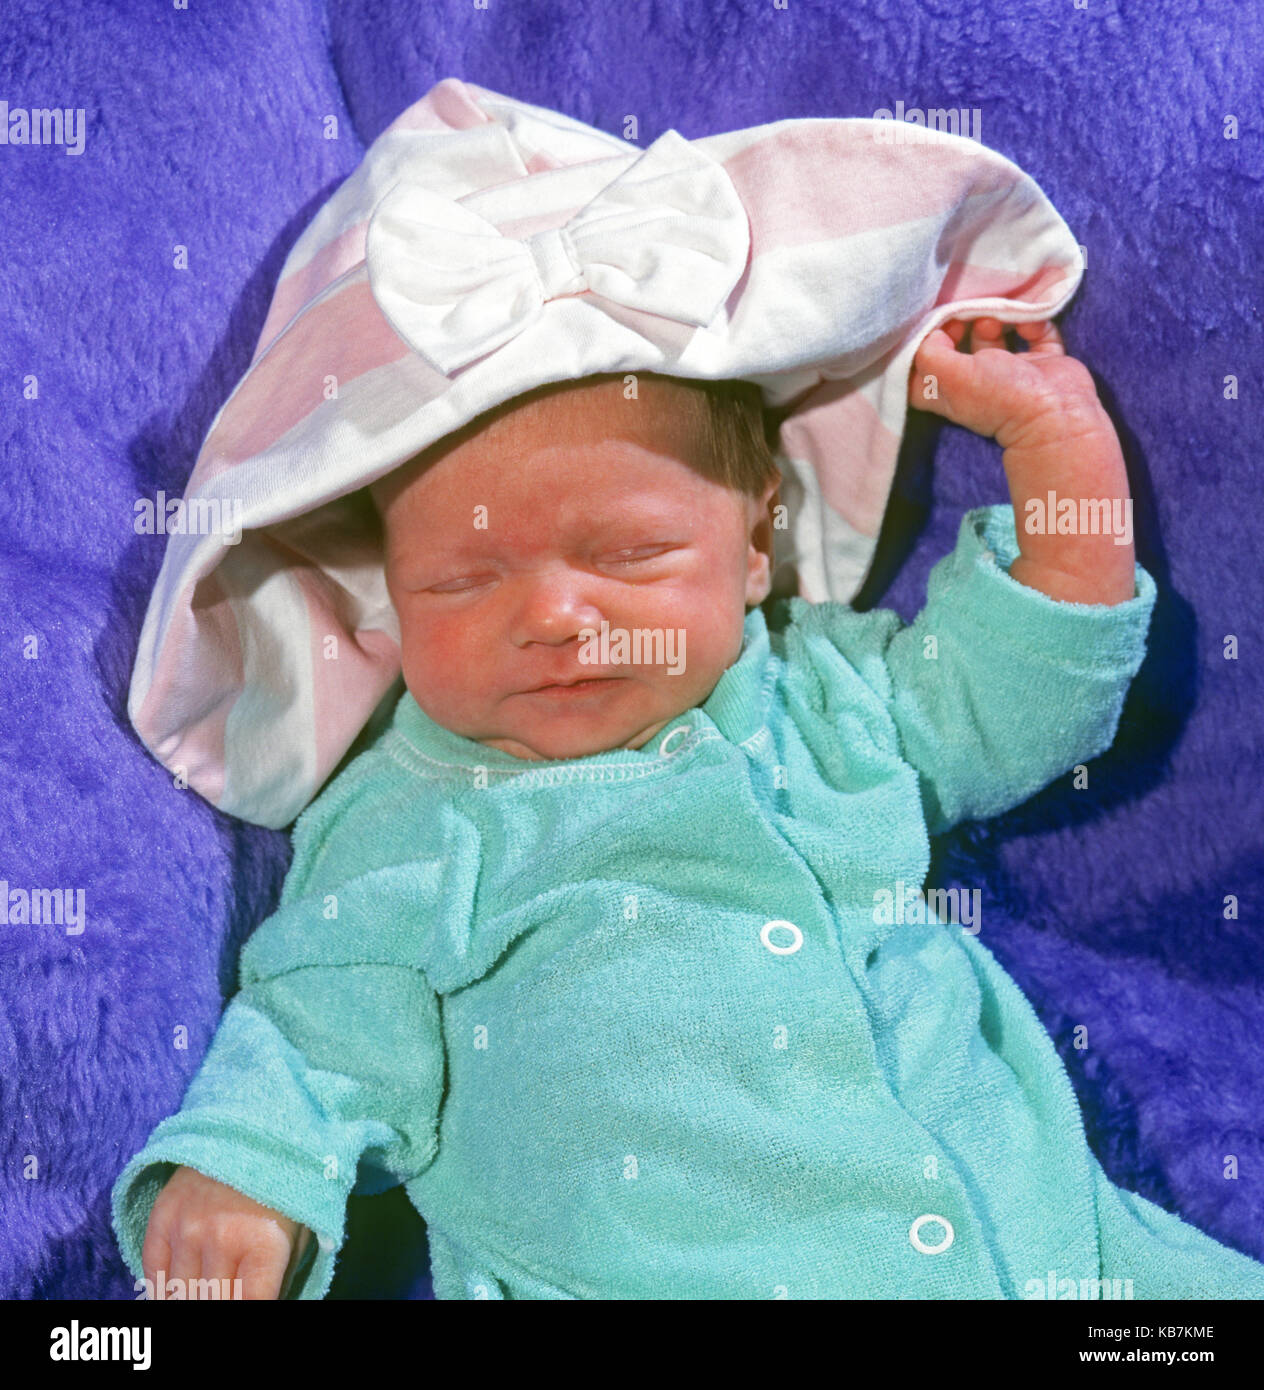 Ein 2 Wochen altes Baby trägt ein Body und einer Motorhaube ein Nickerchen in eine blaue Decke. Stockfoto